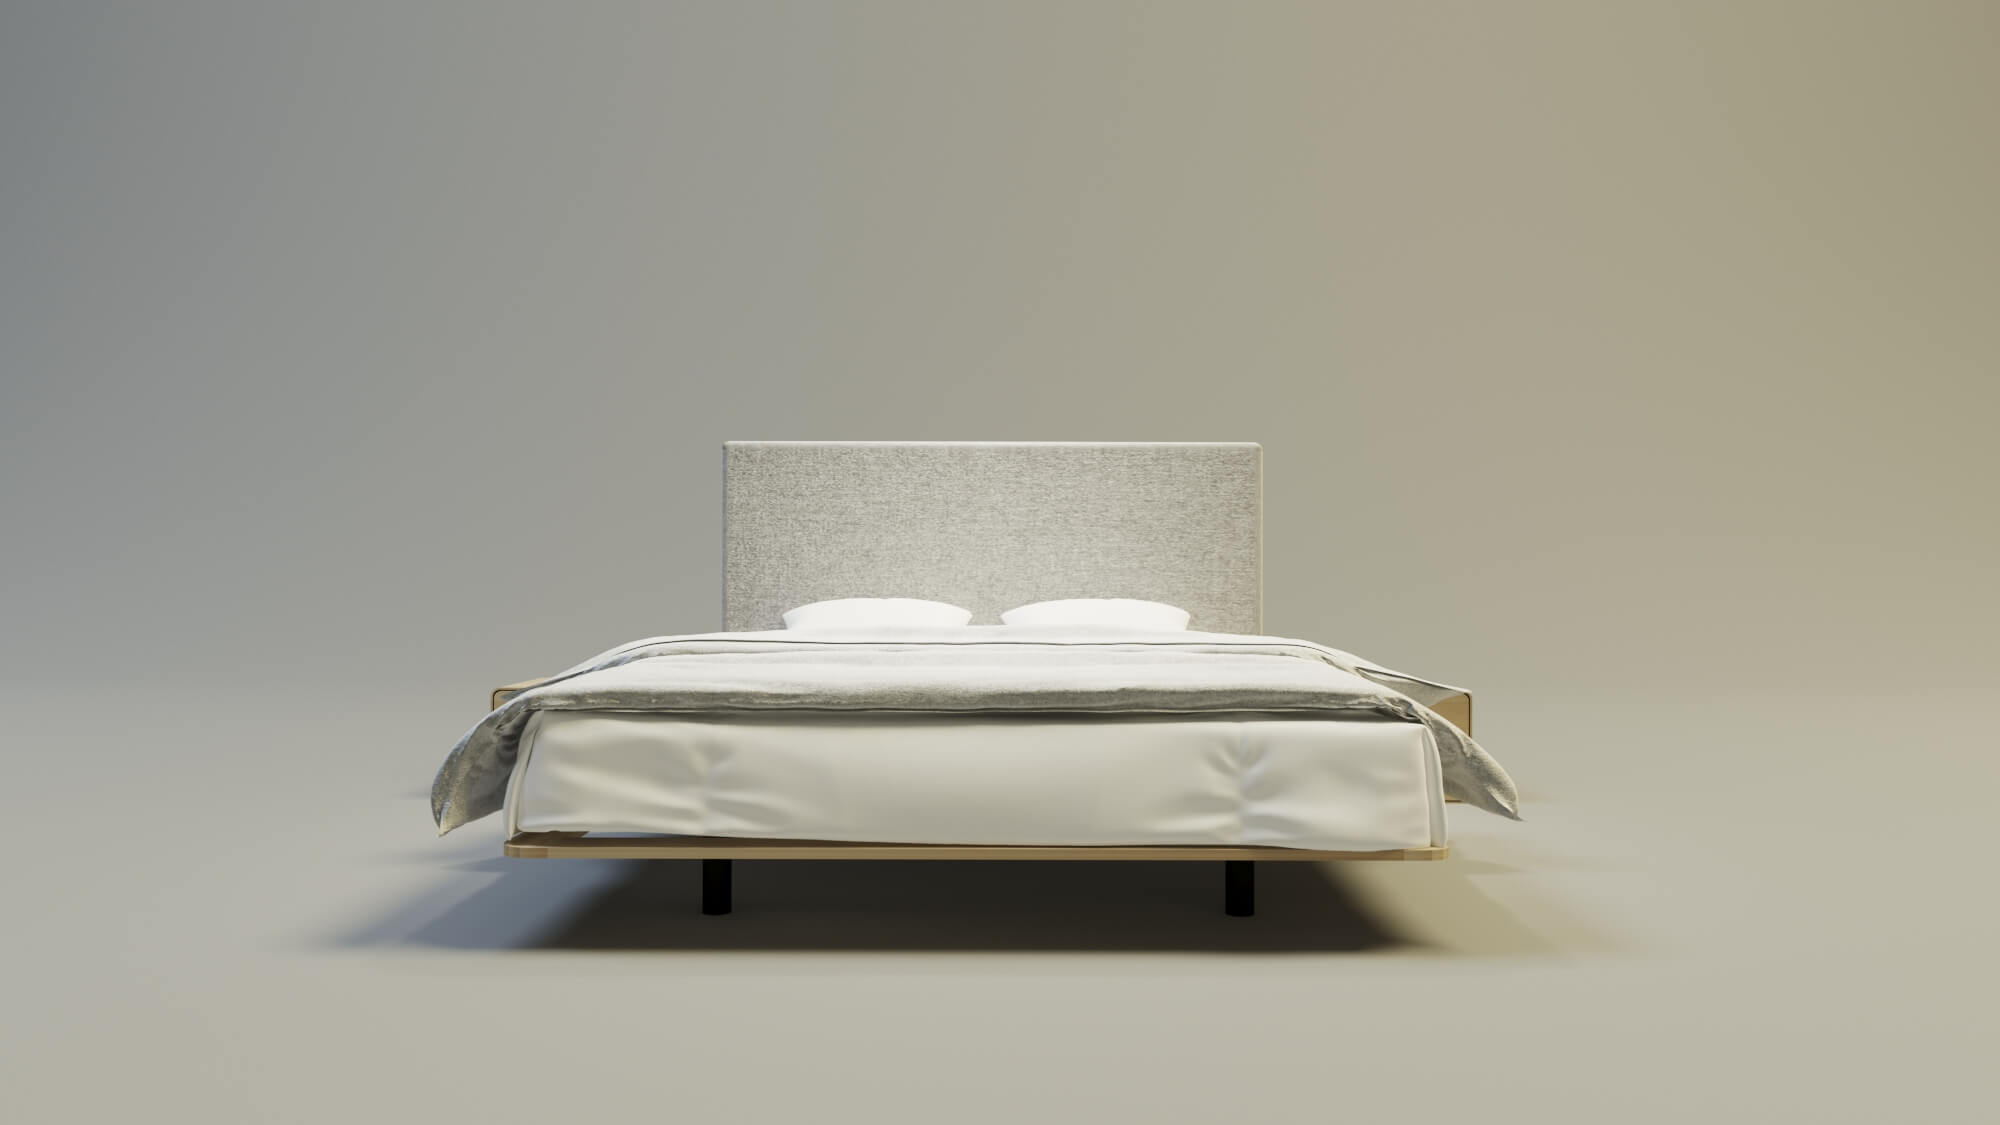 Łóżko drewniane Sonar